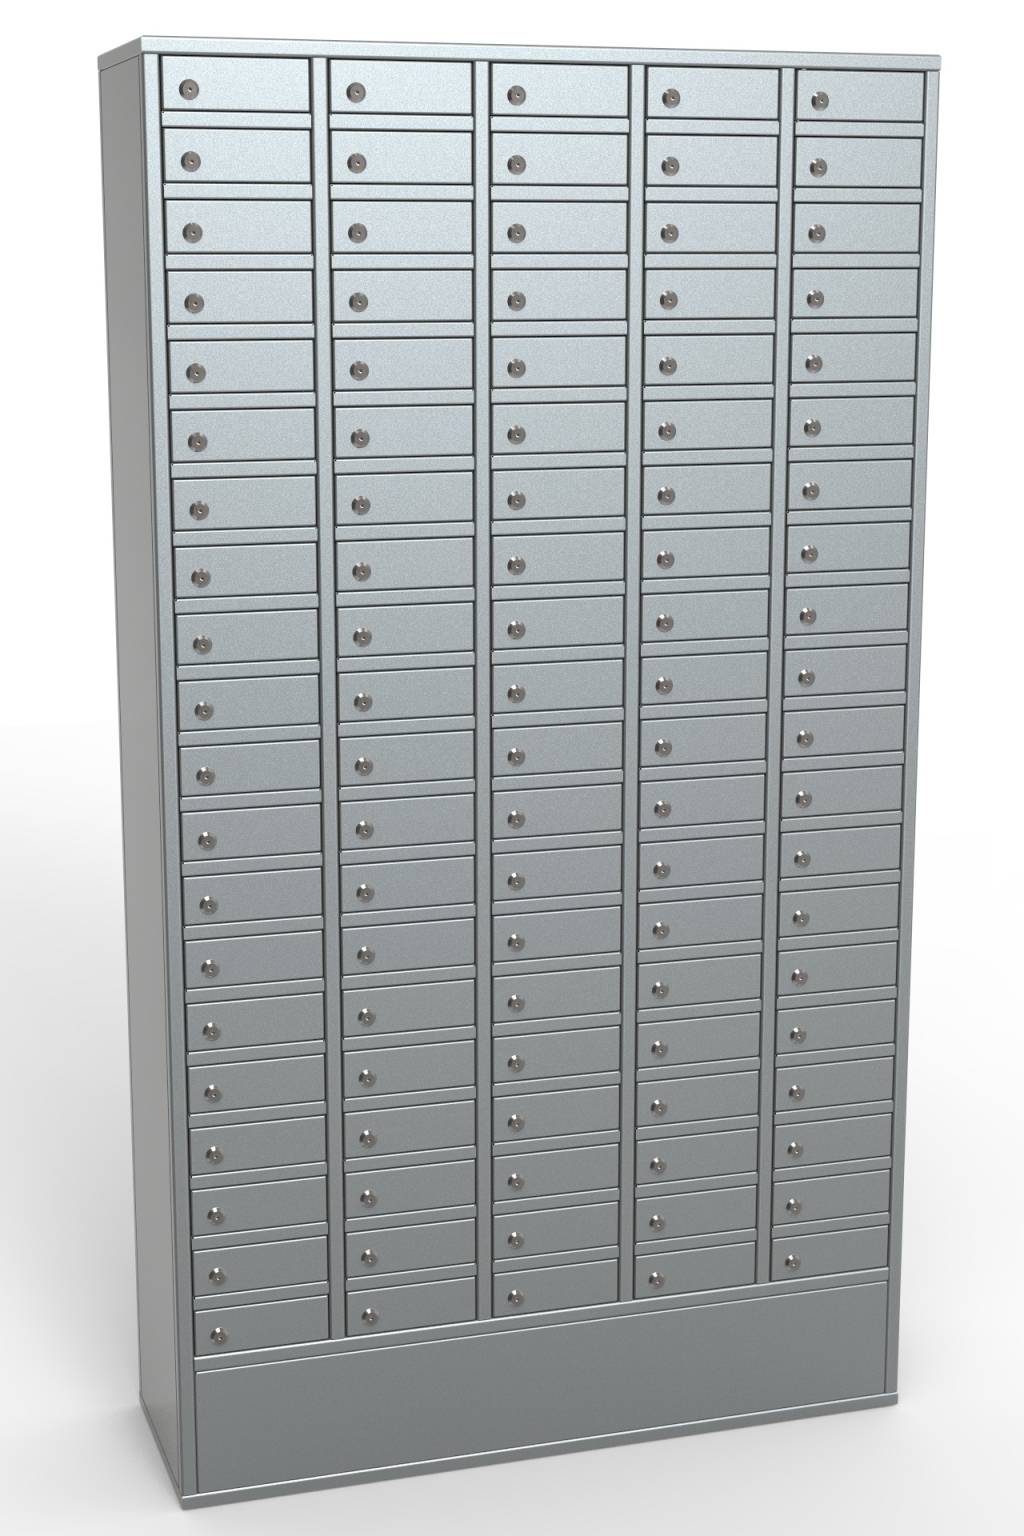 Шкаф абонентский Регион РА.5.100 на 100 отделений с кодовыми замками серии АШ